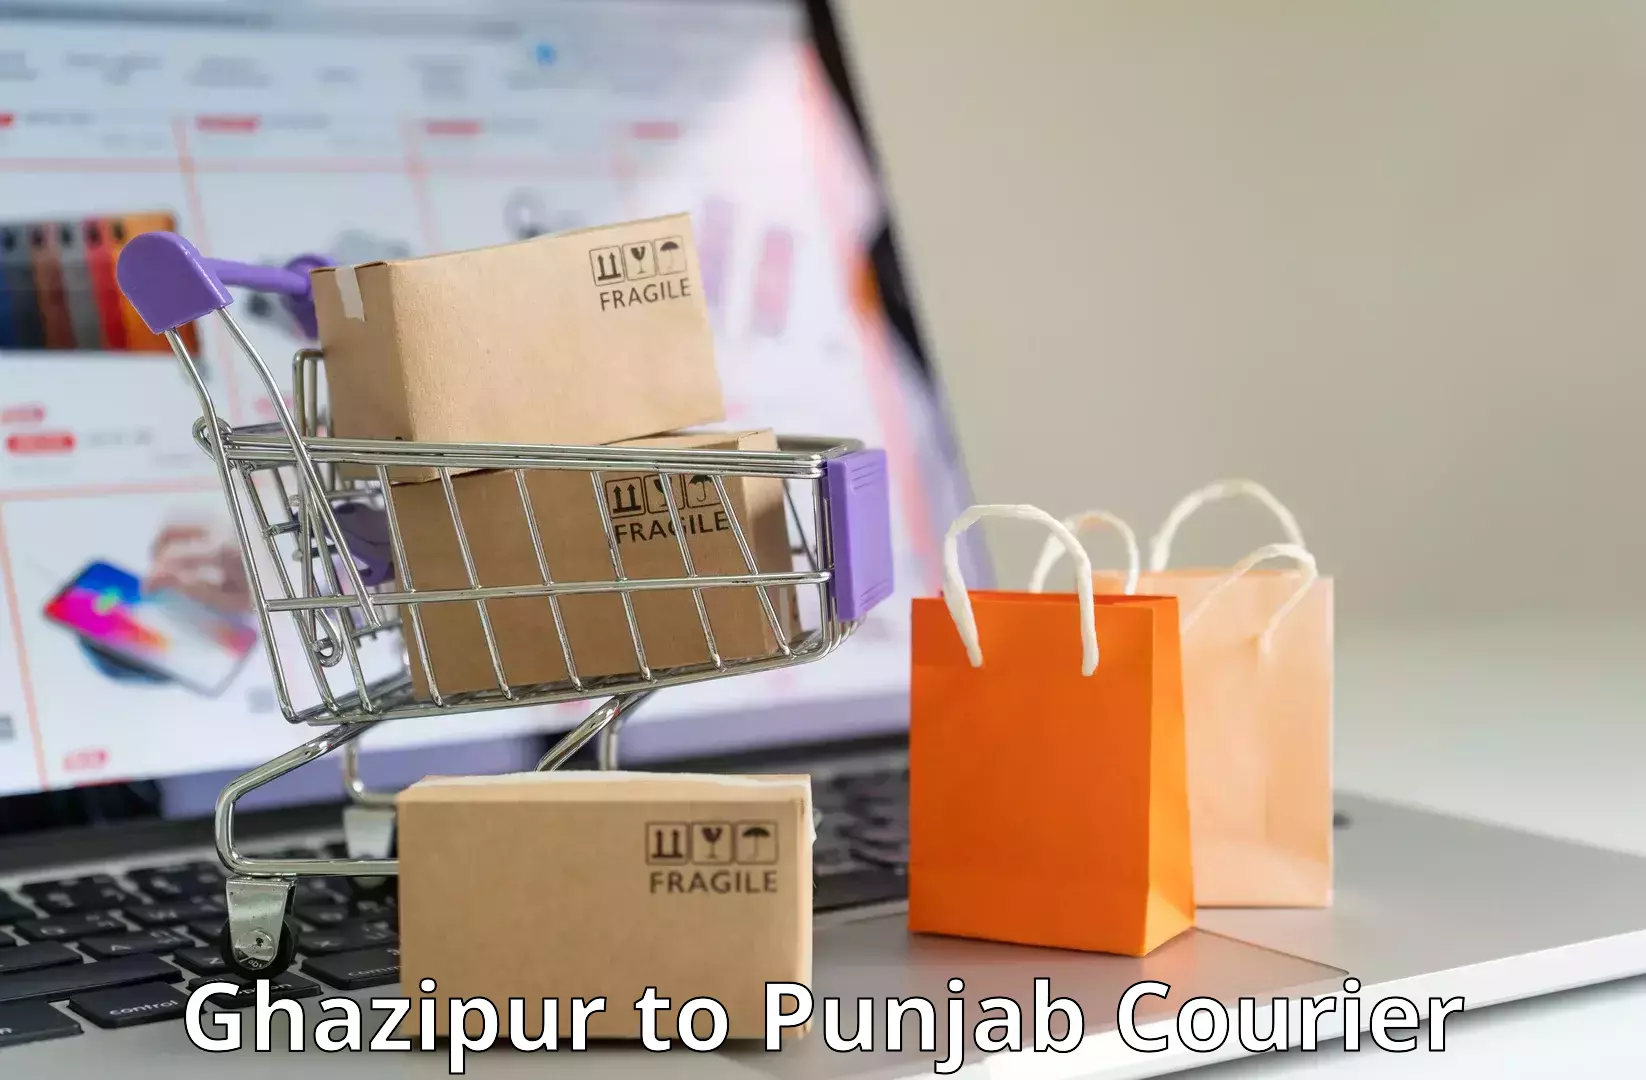 Efficient parcel service Ghazipur to Nangal